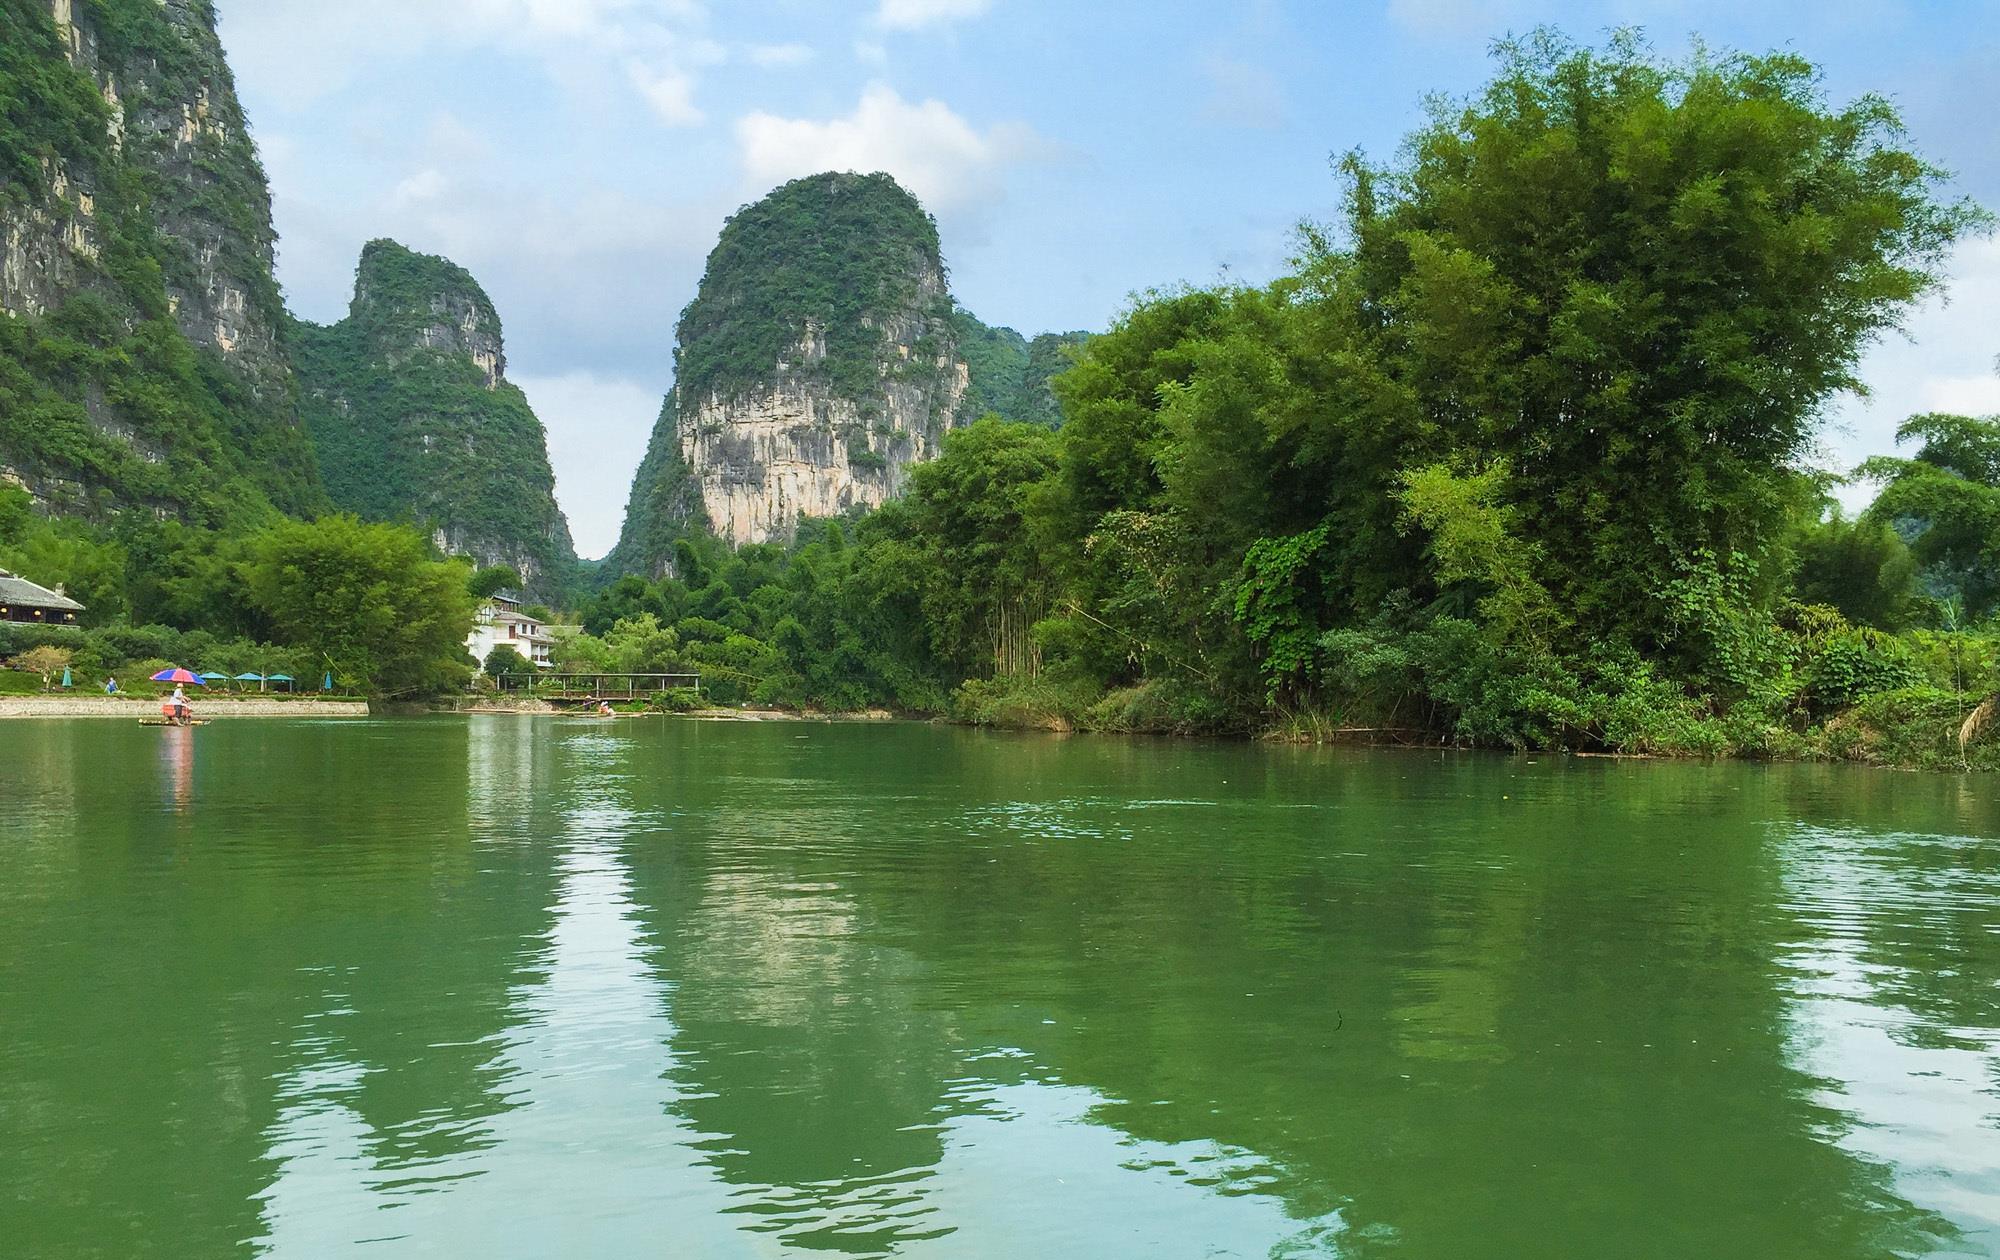 世界上一流的自然遗产,风景如画,完全精缩了广西桂林的漓江山水